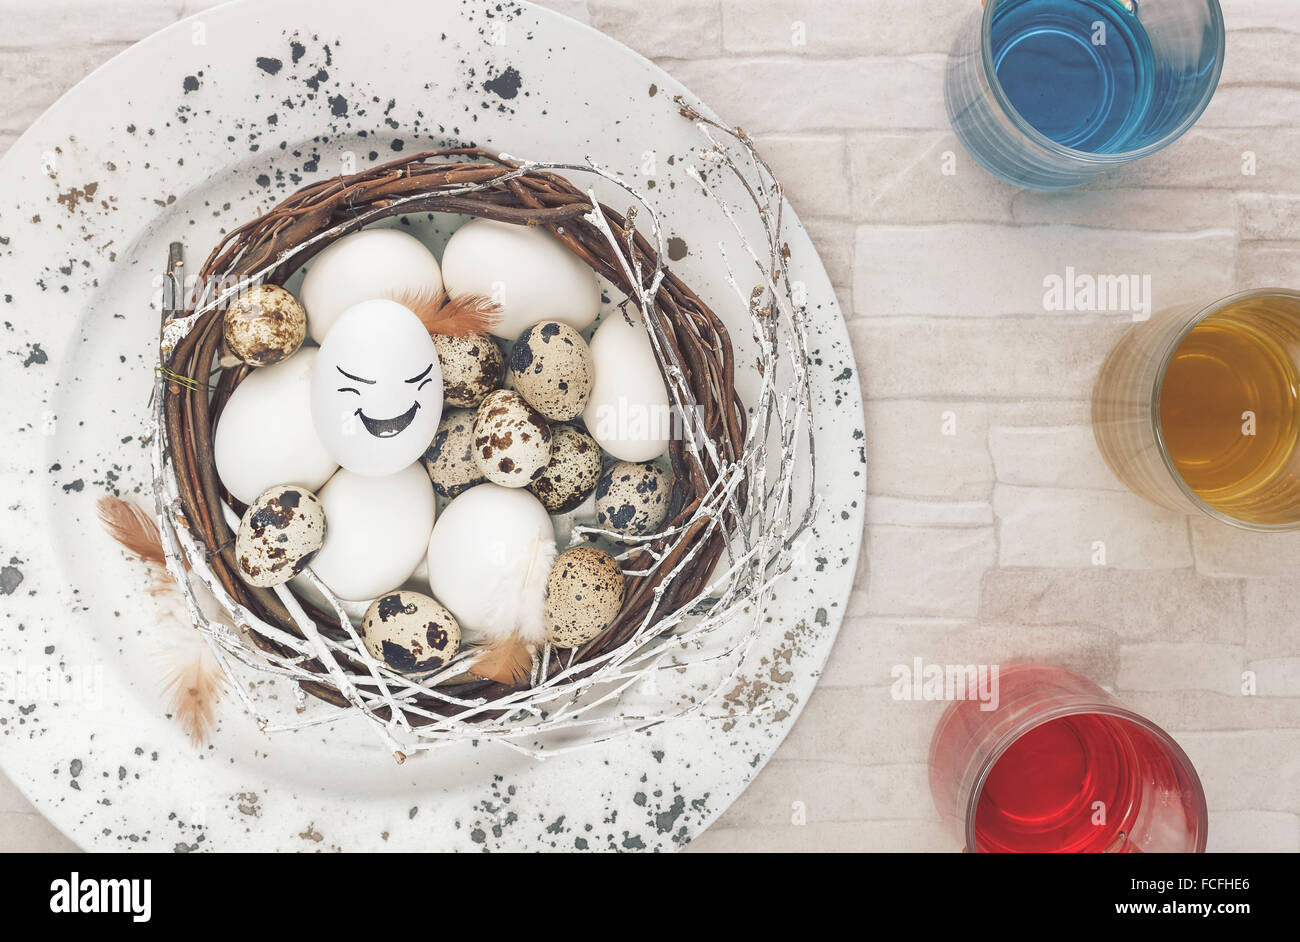 Malvorlagen Ostern-Eggs.Preparing zum Färben von Eiern zu Ostern. Draufsicht mit Retro-Stil-Verarbeitung. Natürliches Licht Stockfoto